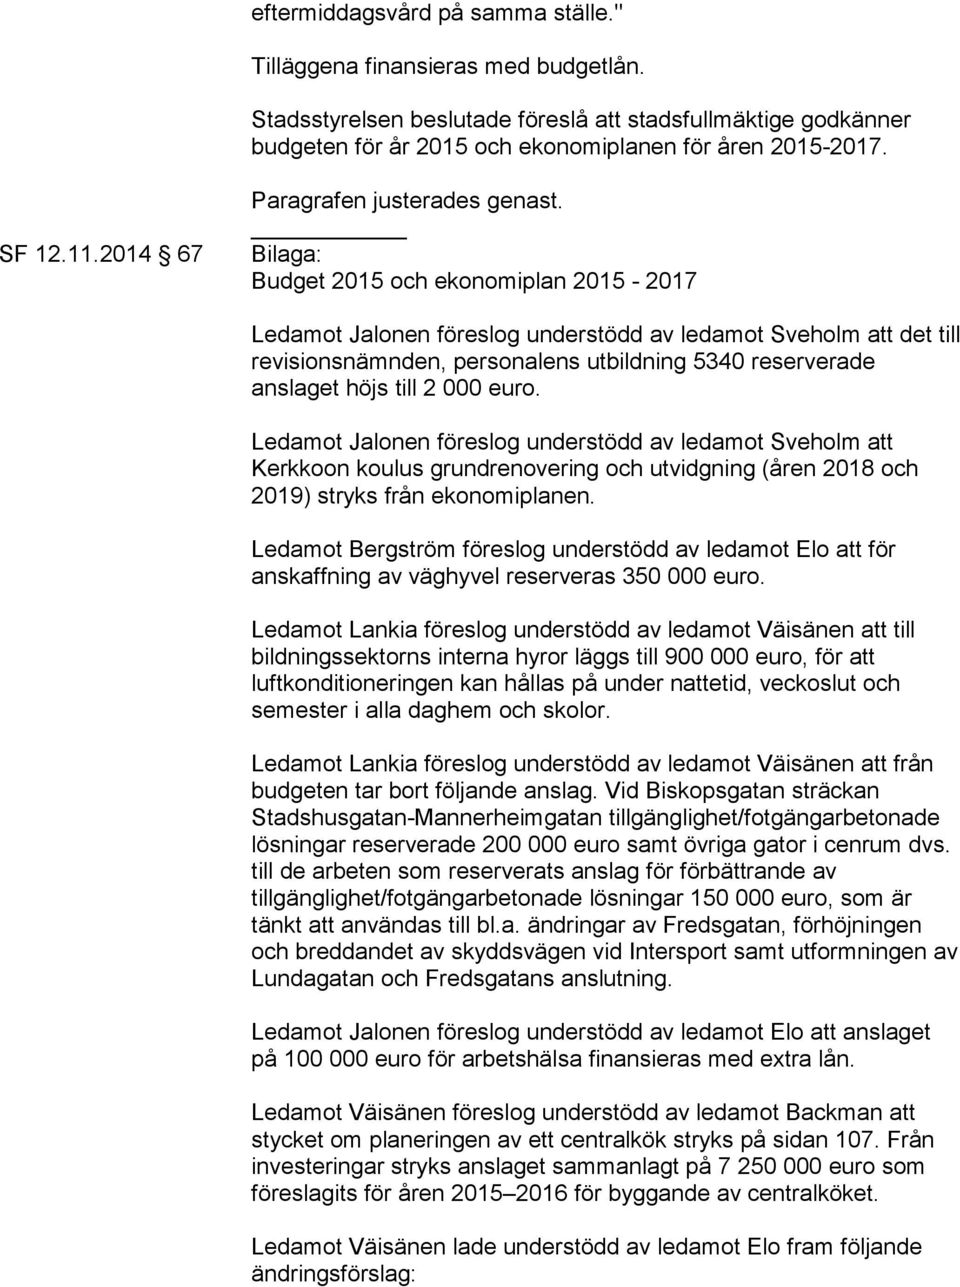 Bilaga: Budget 2015 och ekonomiplan 2015-2017 Ledamot Jalonen föreslog understödd av ledamot Sveholm att det till revisionsnämnden, personalens utbildning 5340 reserverade anslaget höjs till 2 000